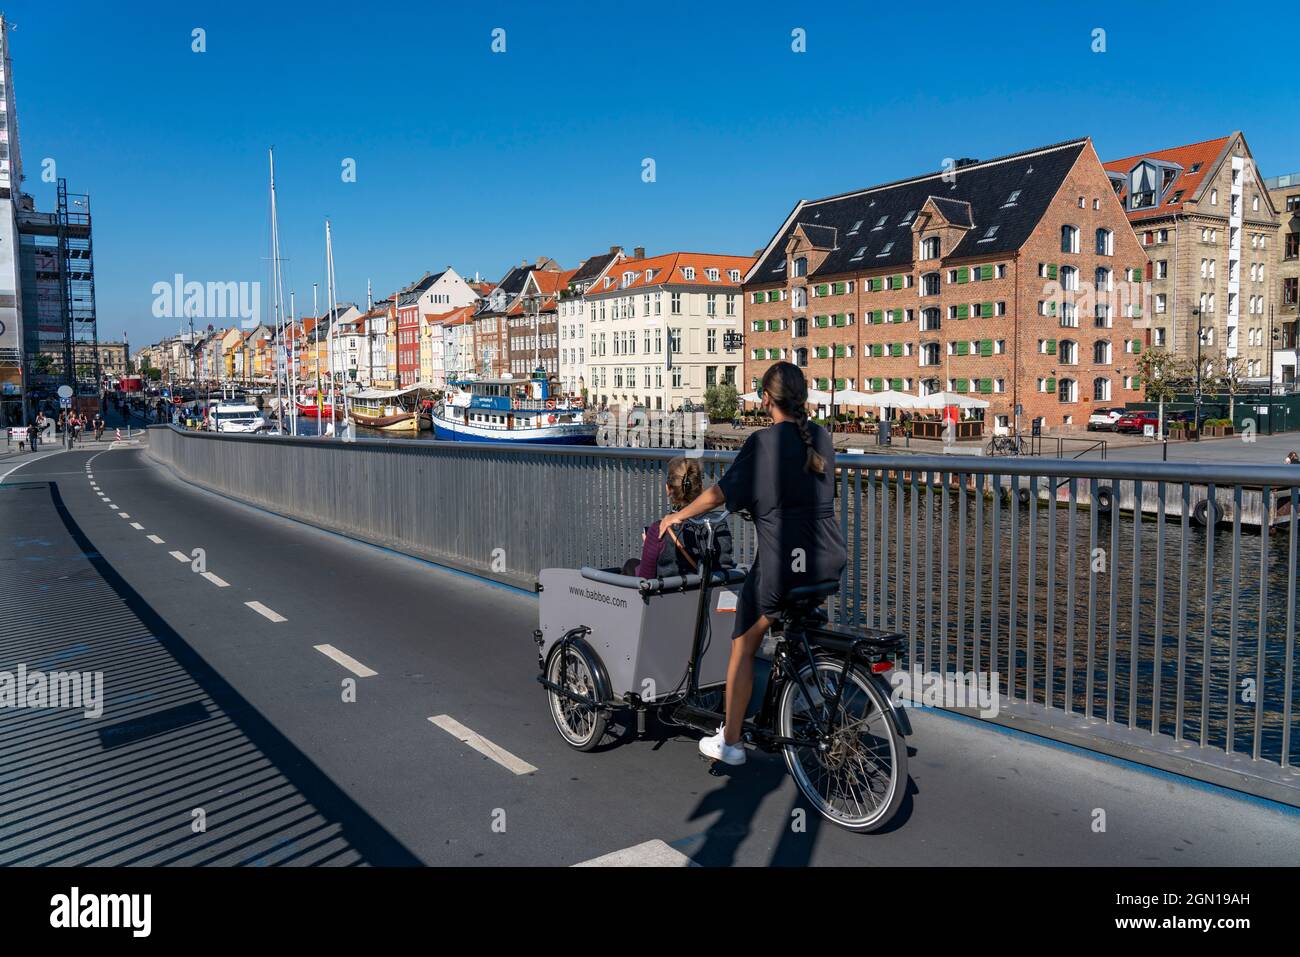 Radfahrer auf der Rad- und Gehwegbrücke Inderhavnsbroen, über den Hafen, beim Nyhavn, Kopenhagen gilt als die Fahrrad Hauptstadt der Welt, 45 % der EI Foto Stock